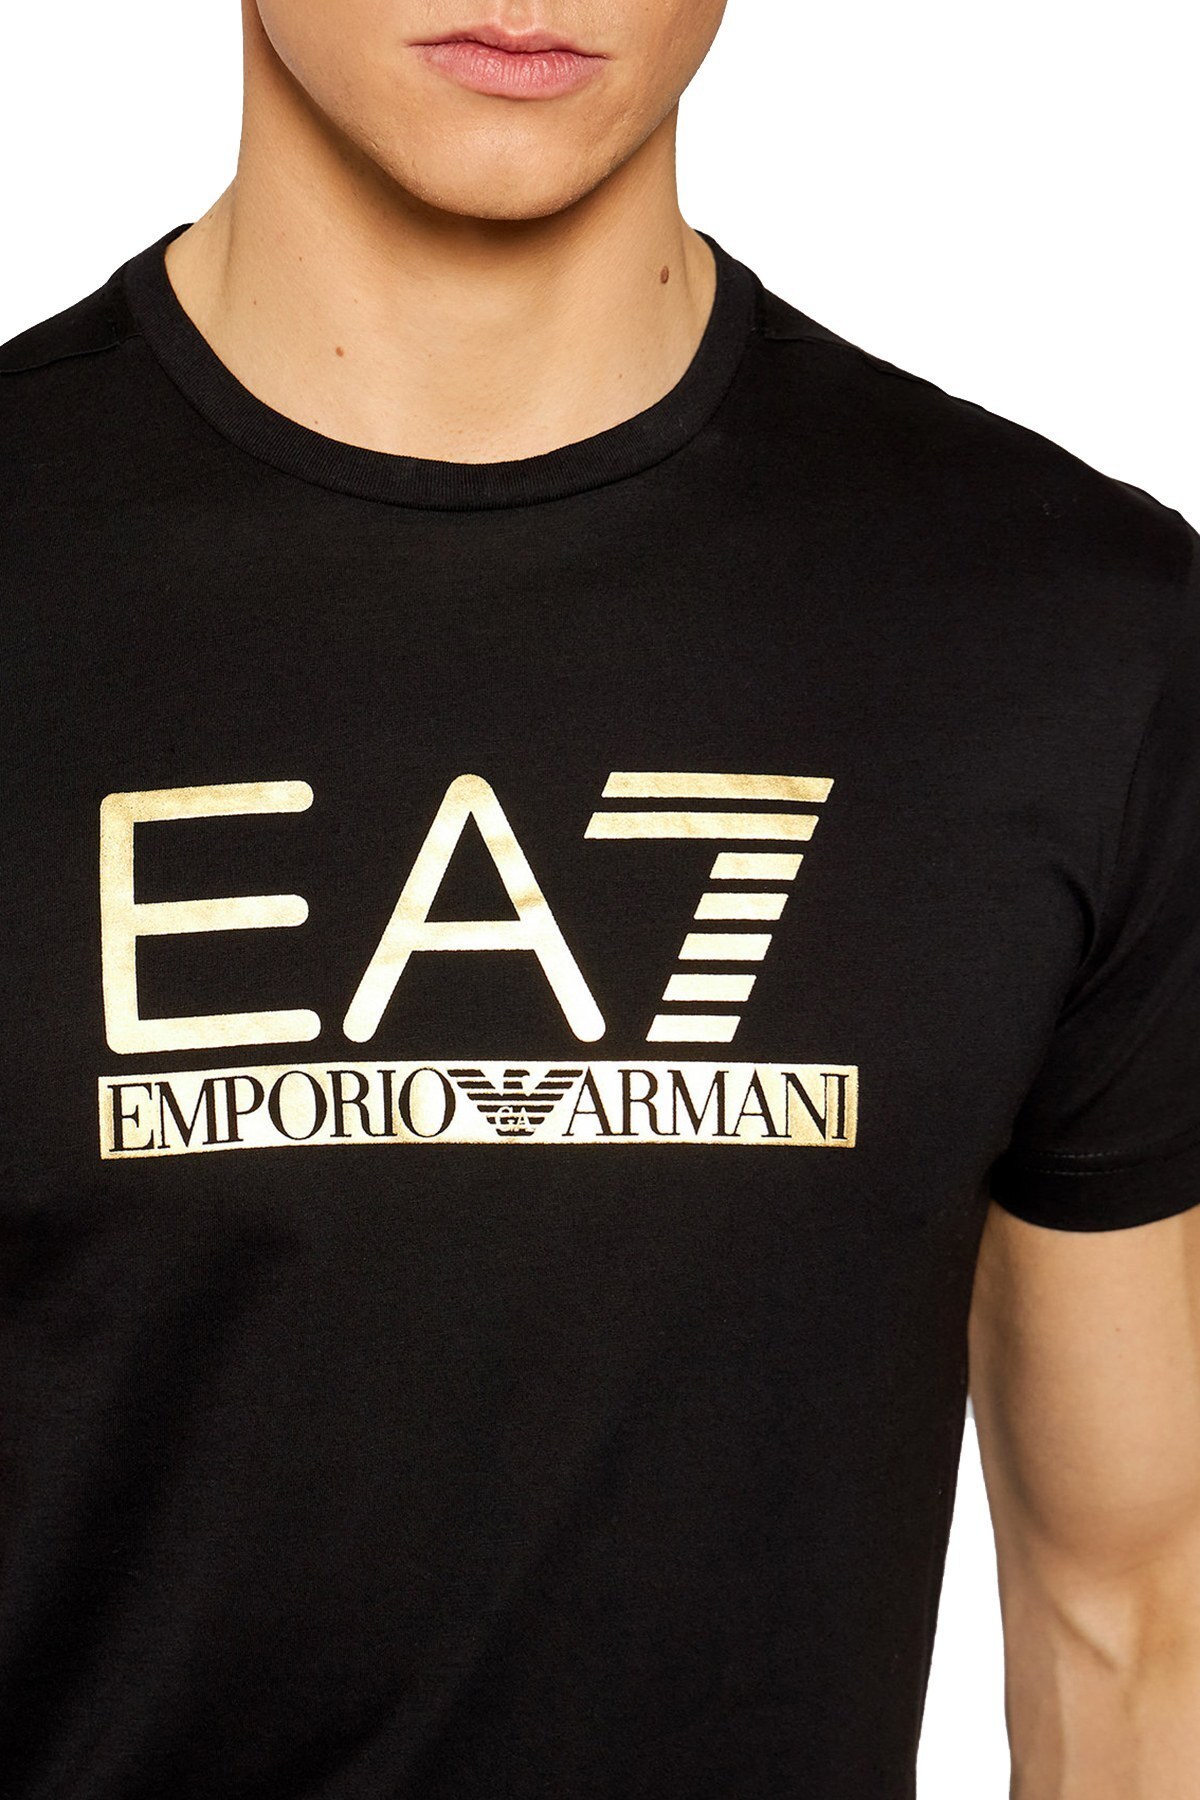 EA7 Logo Baskılı Bisiklet Yaka % 100 Pamuk Erkek T Shirt 3KPT87 PJM9Z 1200 SİYAH